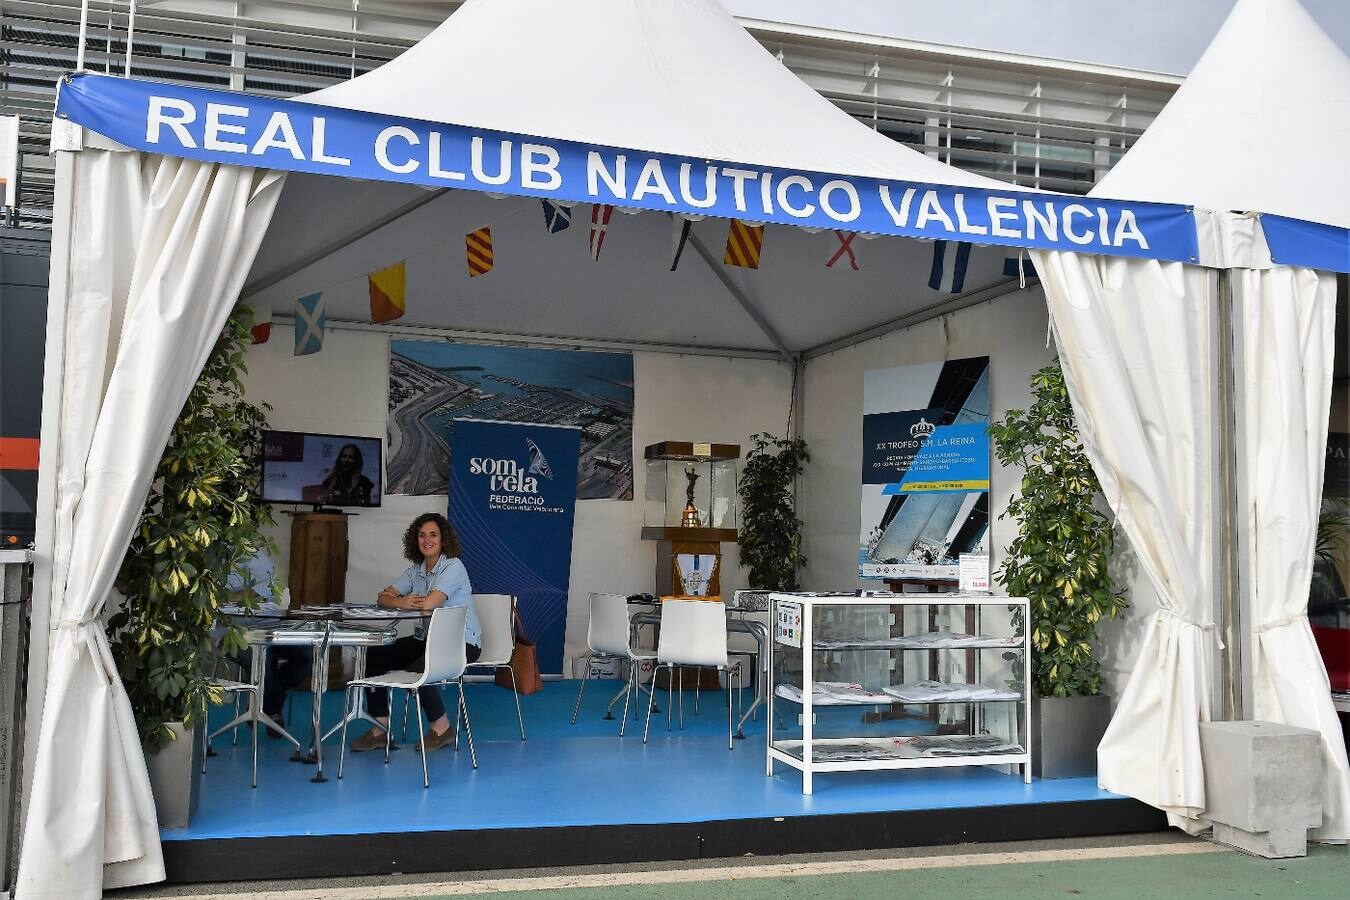 El salón náutico, que se inauguró el miércoles y se clausurará el domingo día 5 con una jornada de puertas abiertas, confirma su pujanza con más expositores, ventas y visitas de compradores en la Marina de Valencia